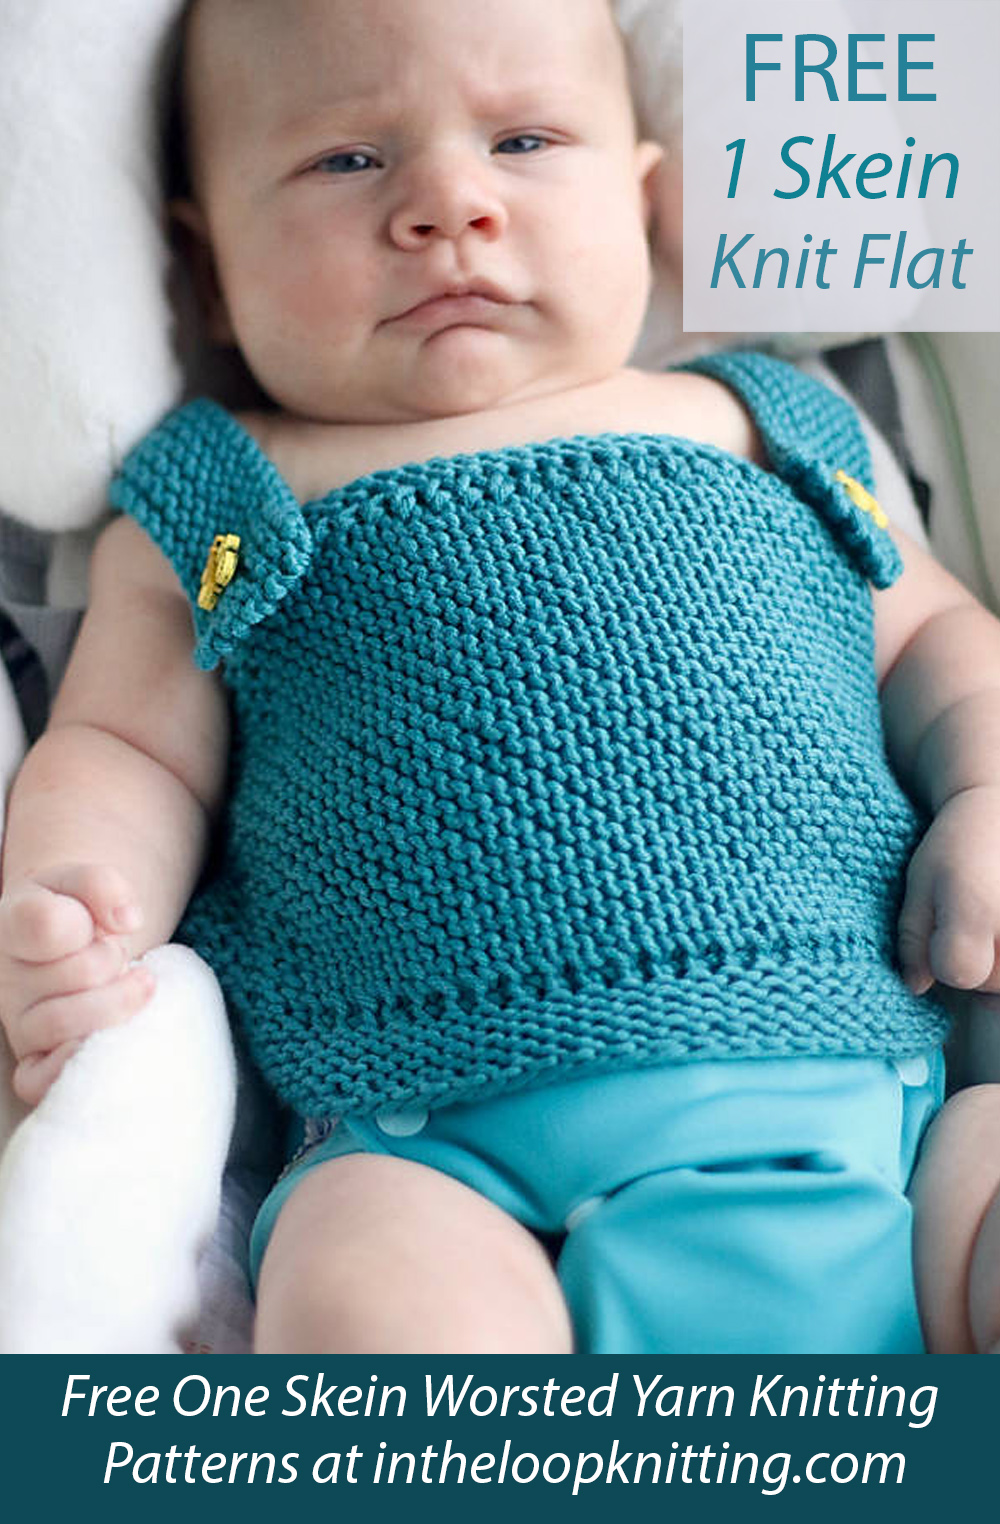 Free One Skein Landon Baby Top Knitting Pattern